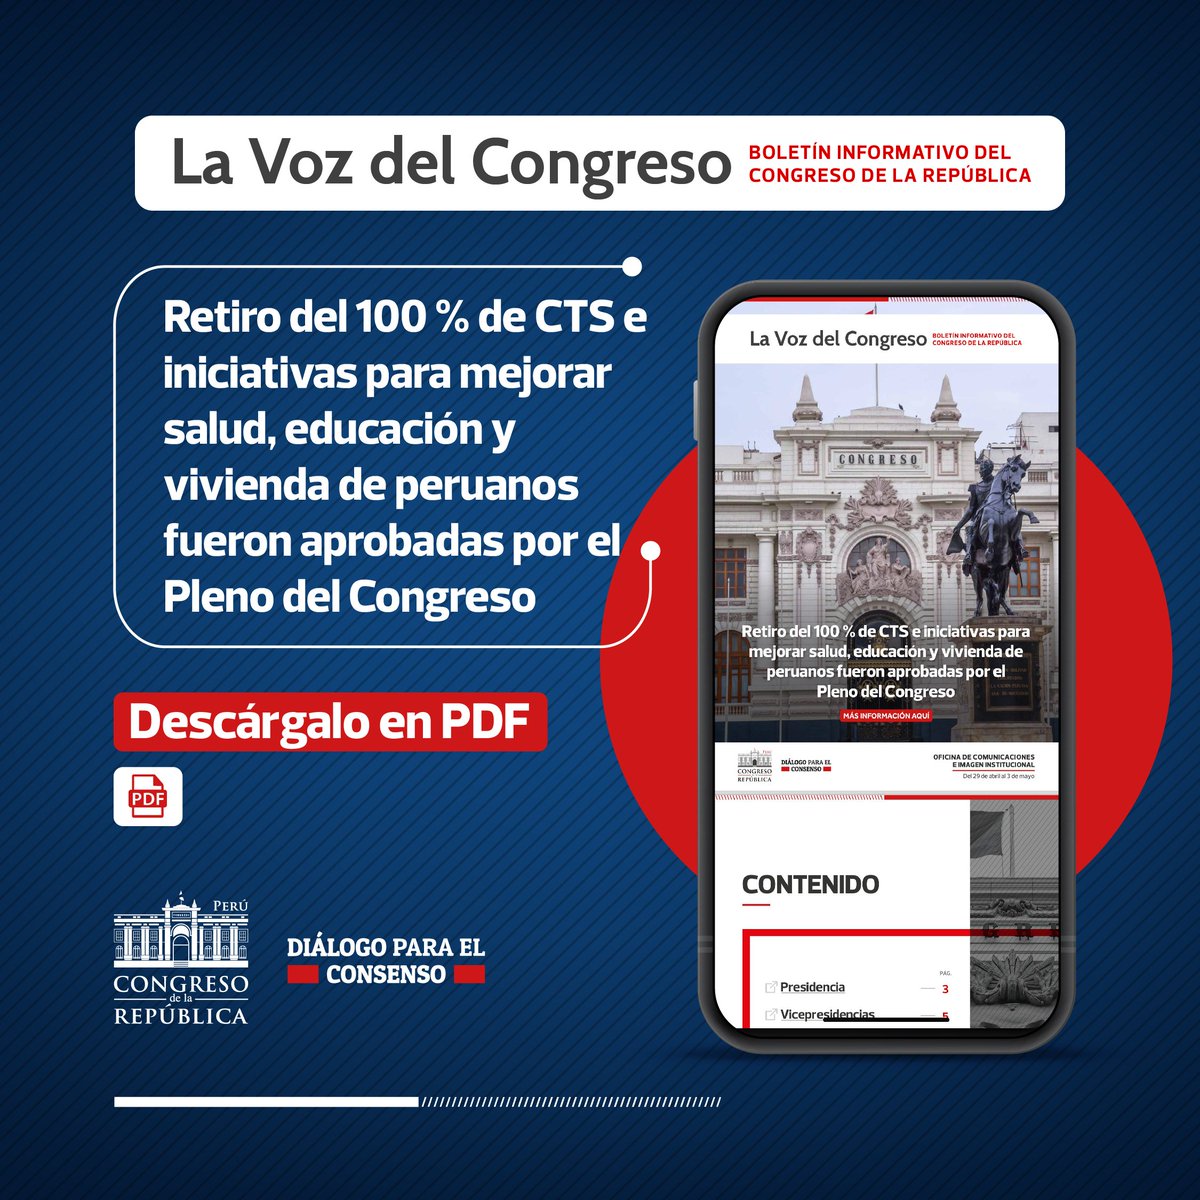 #CongresoInforma I Te contamos el trabajo que realiza el Parlamento Nacional, en nuestro boletín informativo.

🗞 acortar.link/rJSezT